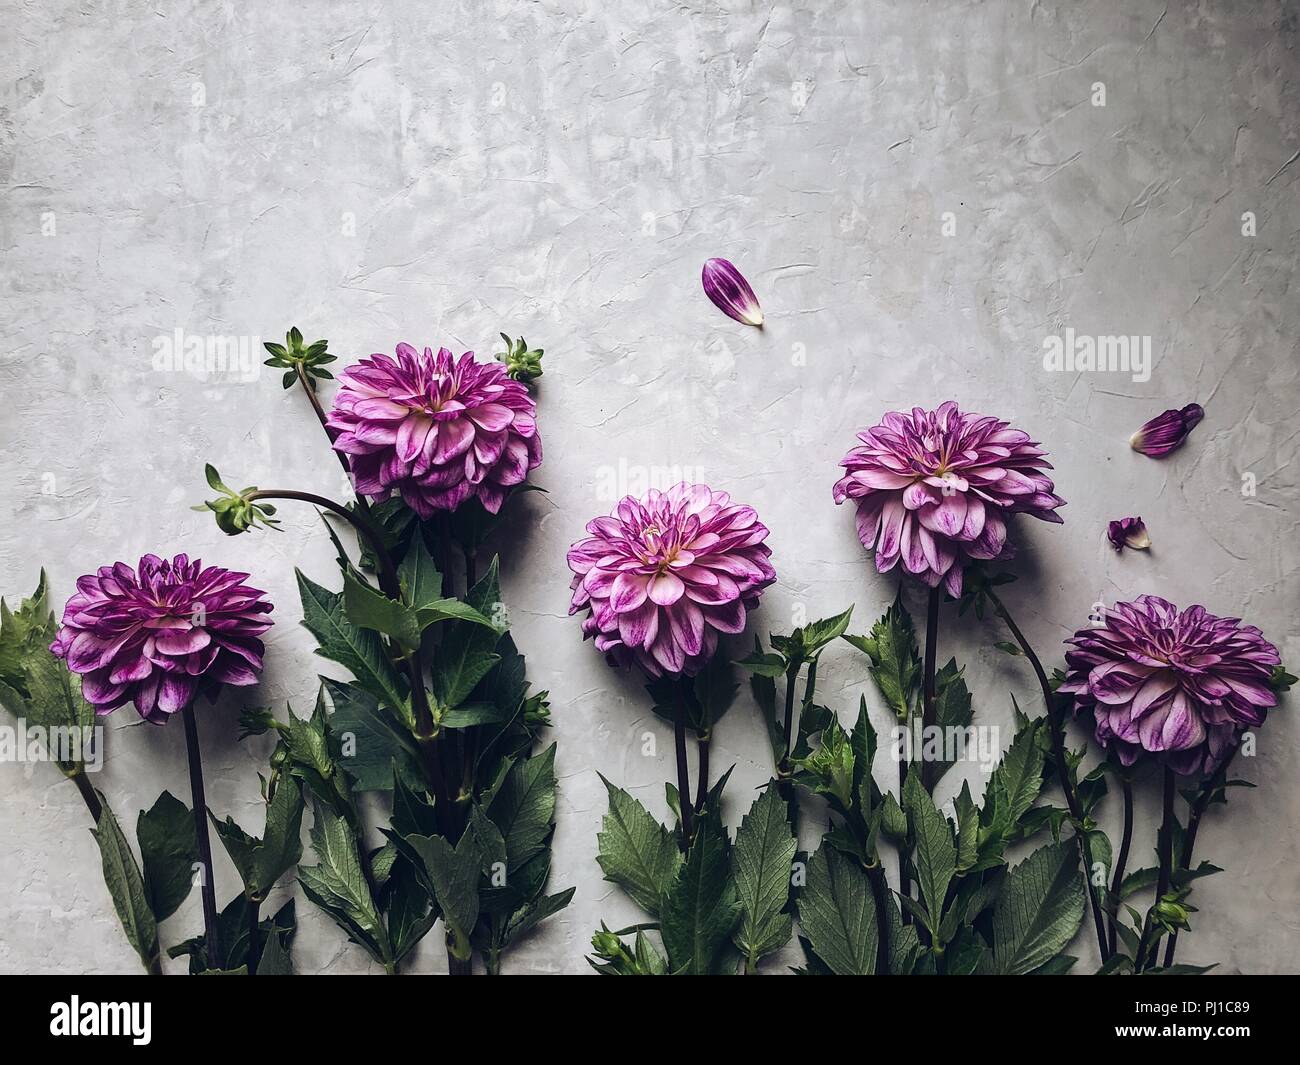 Dahlia arrangement on a grey background Stock Photo - Alamy